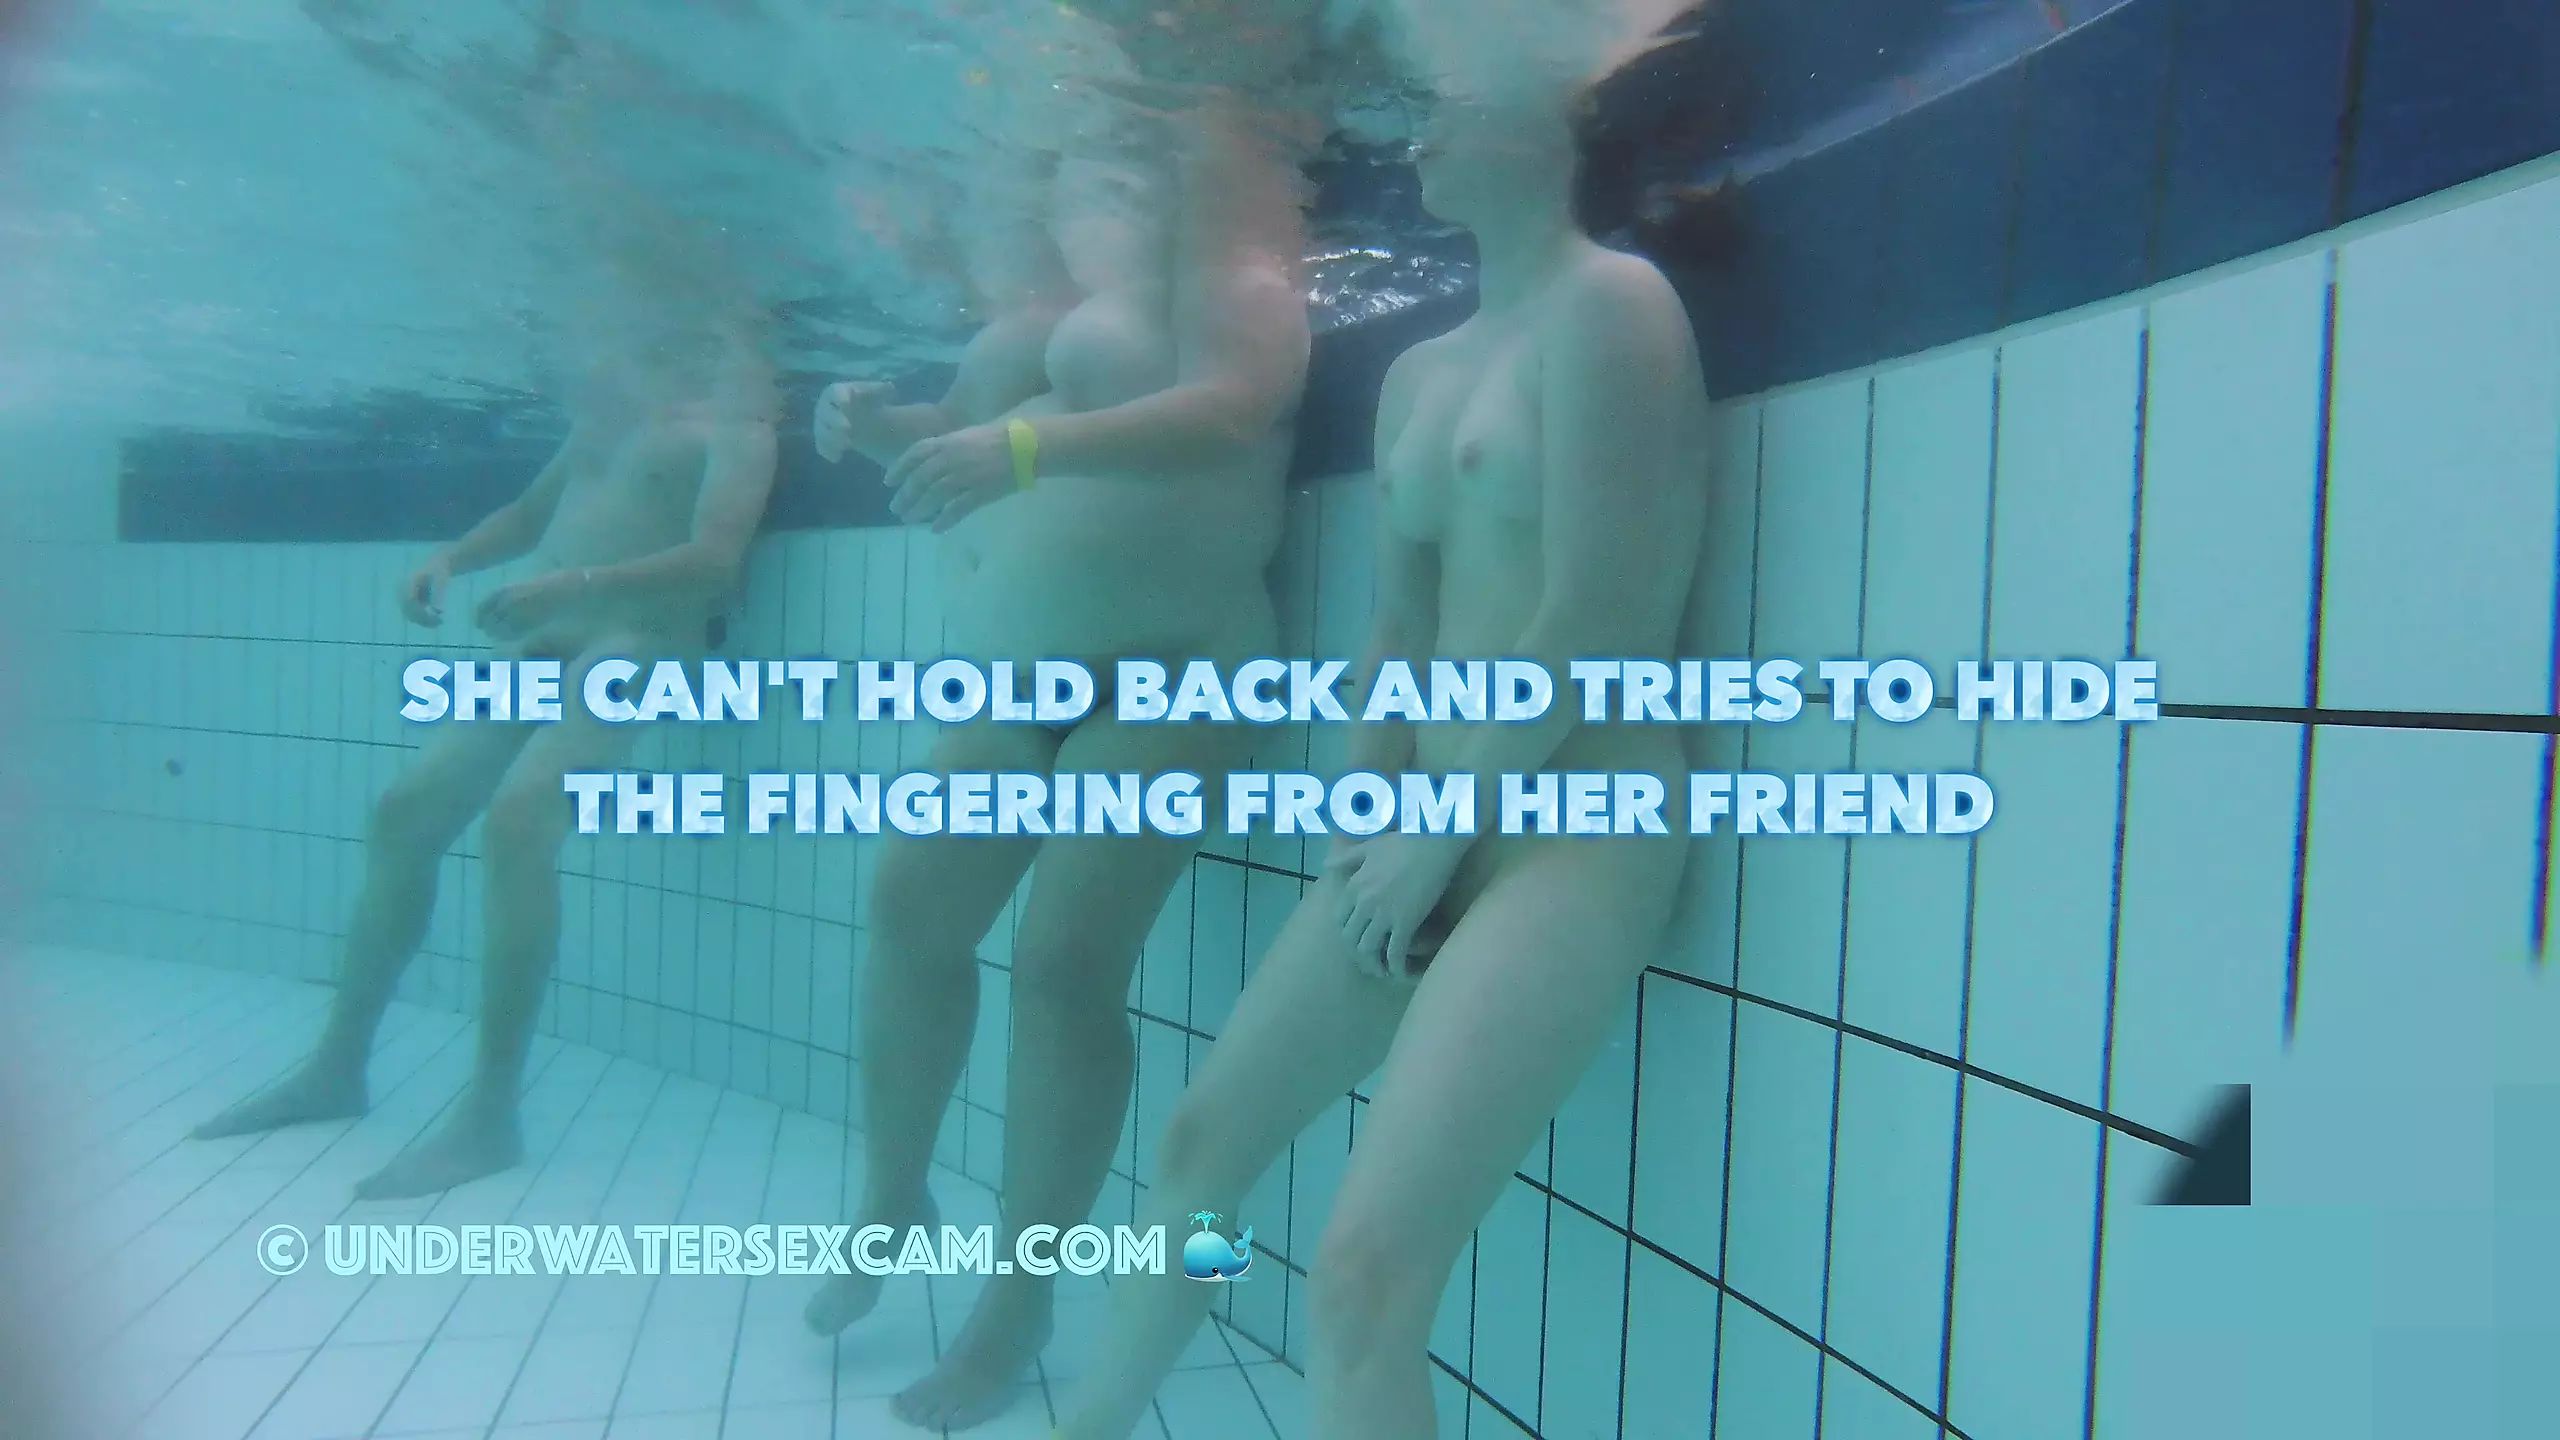 Une fille folle se masturbe dans une piscine publique et essaye de se cacher, mais je lai filmée